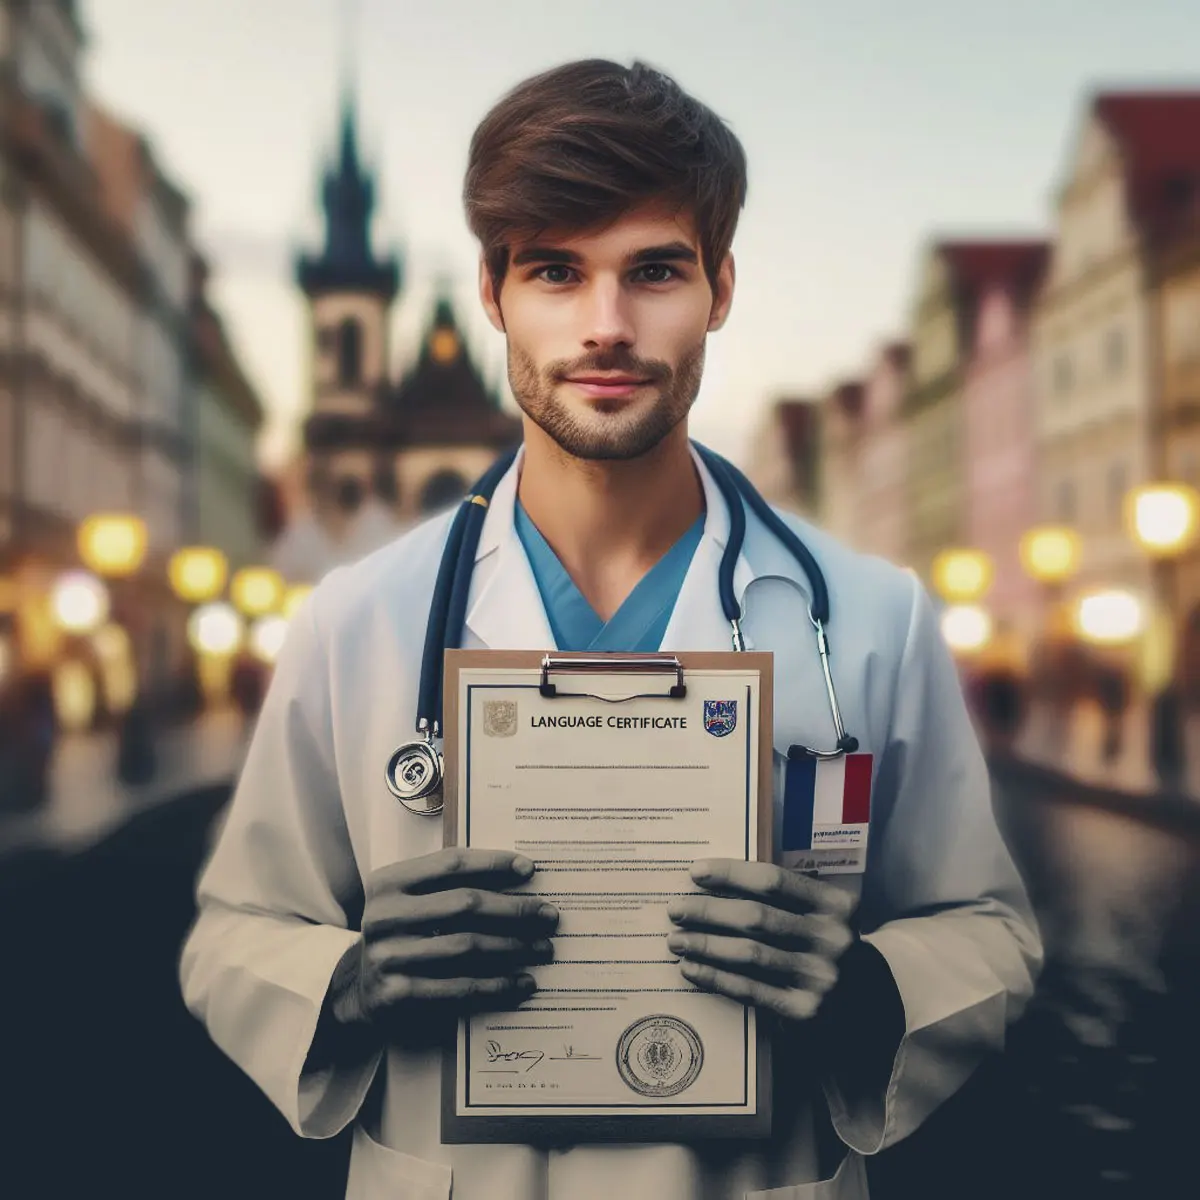 مدرک زبان و محدودیت سنی رشته های پزشکی در چک